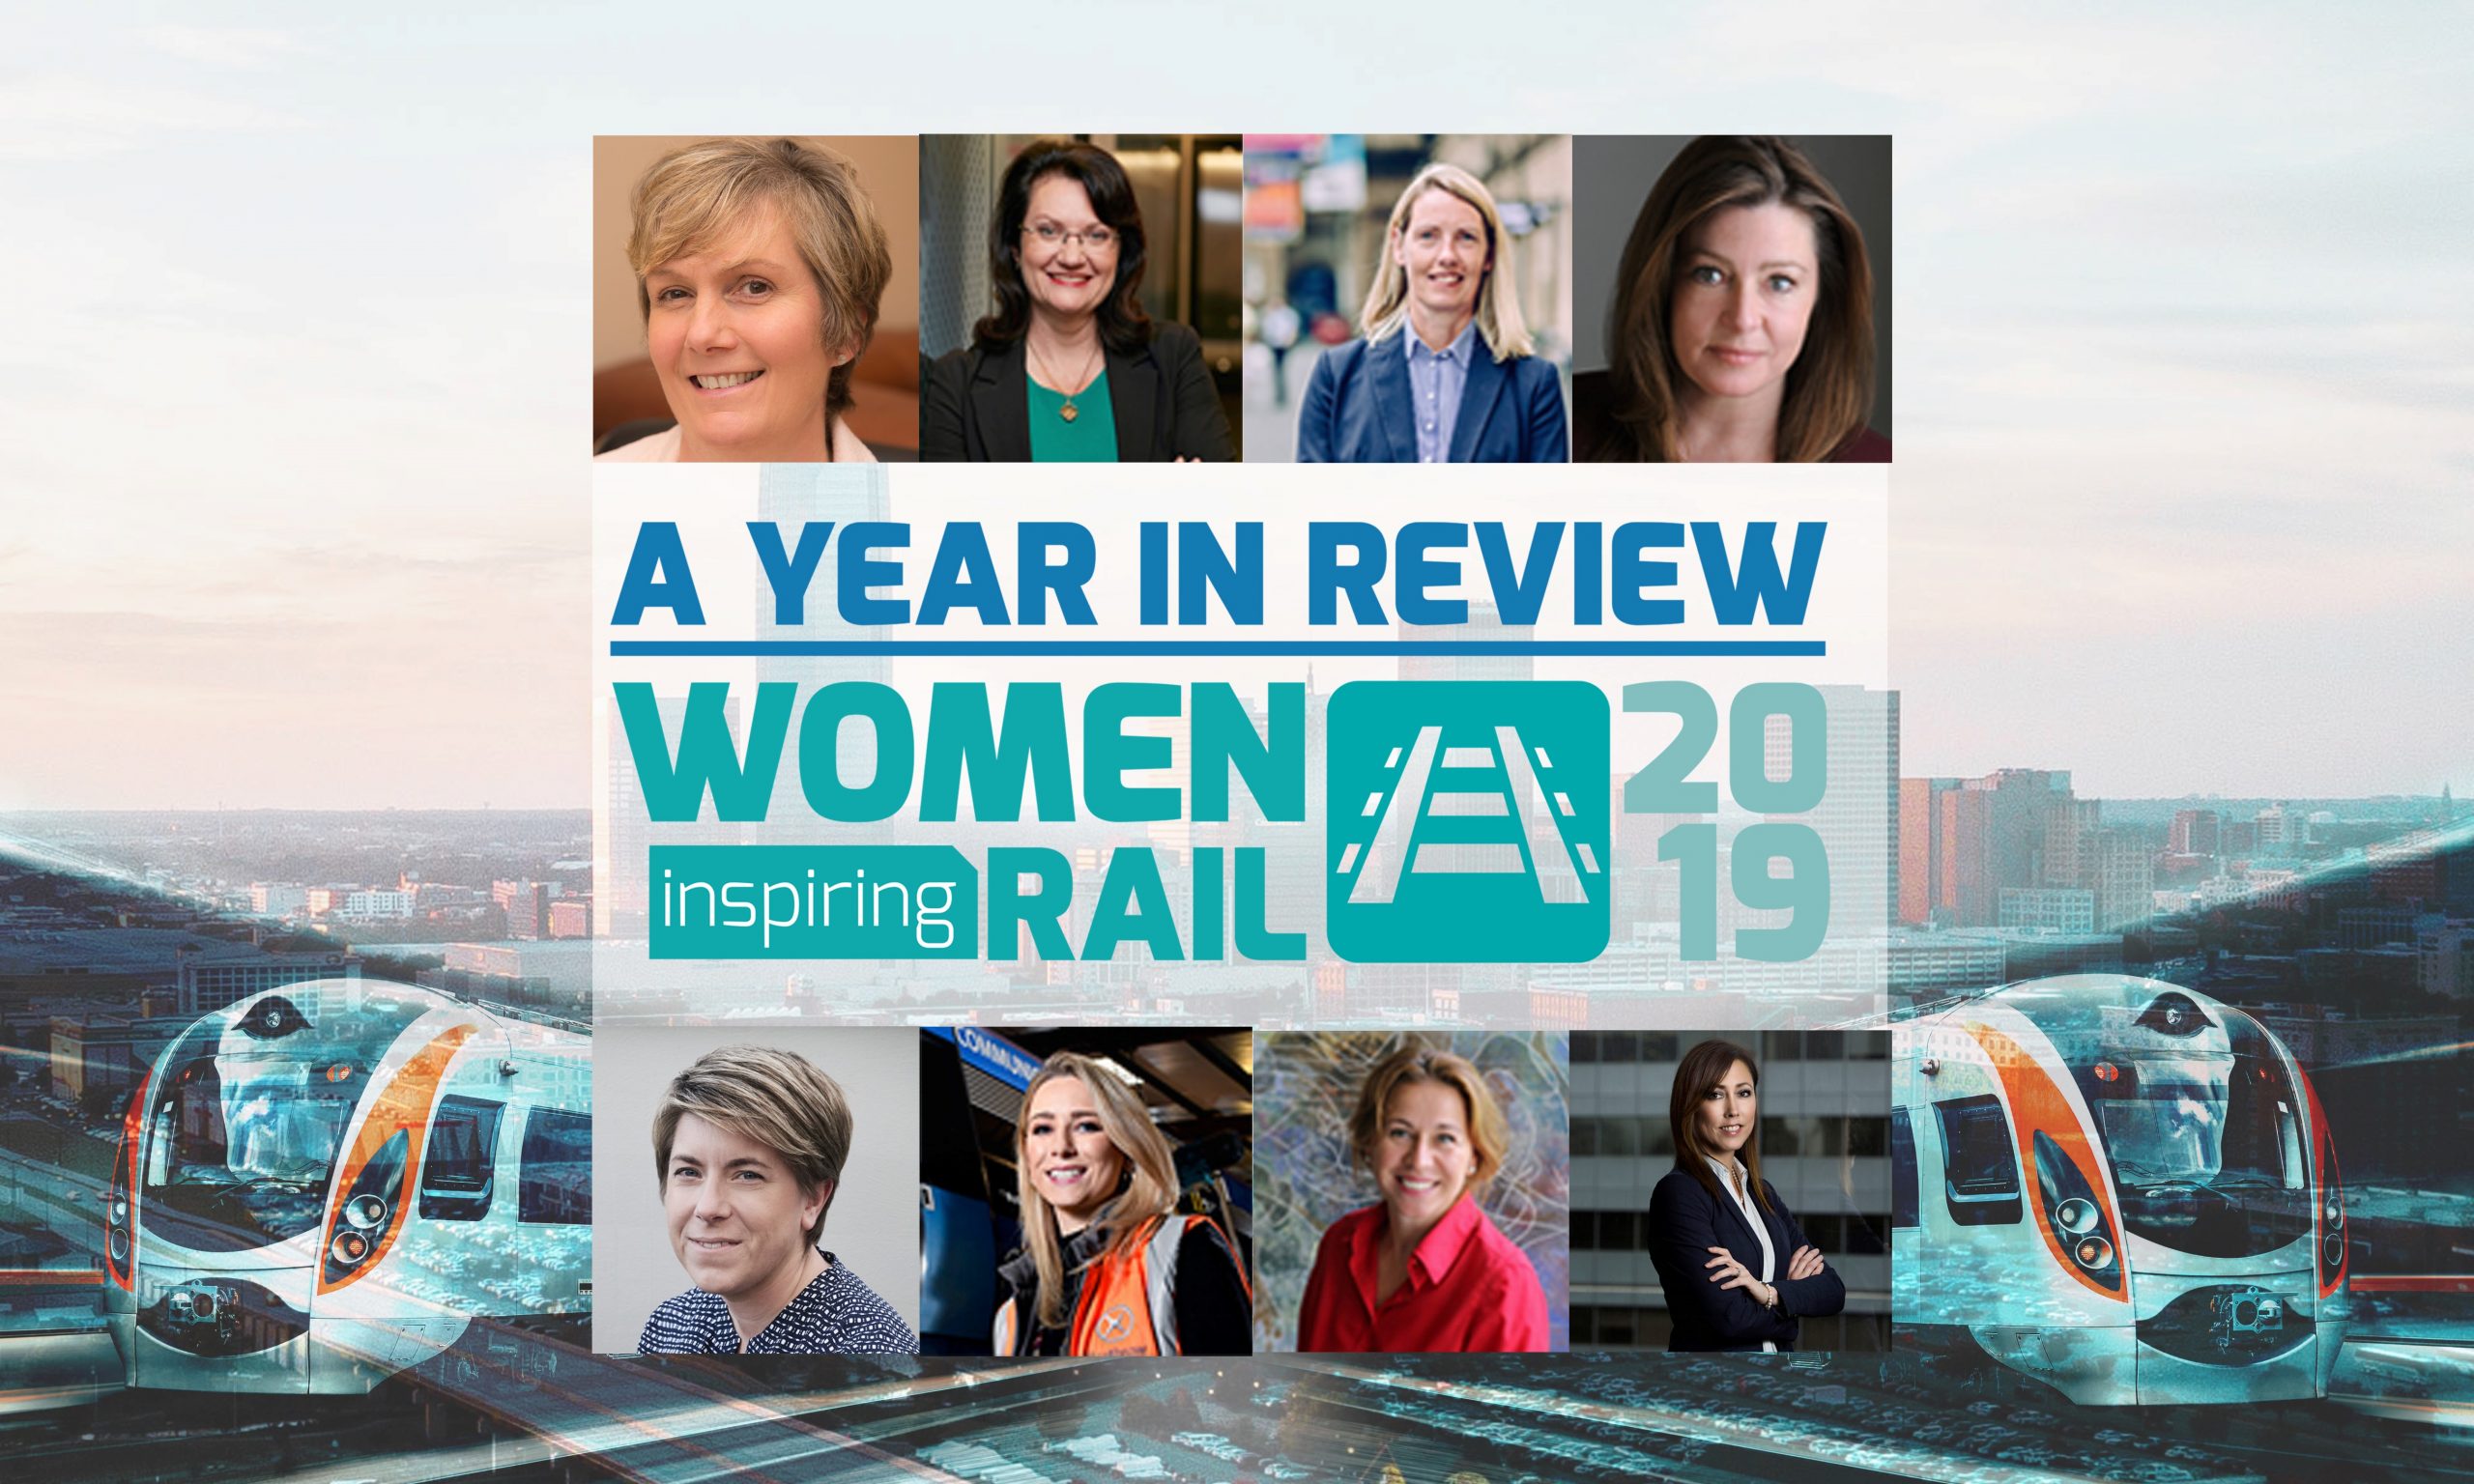 妇女鼓舞人心的铁路：一年的审查